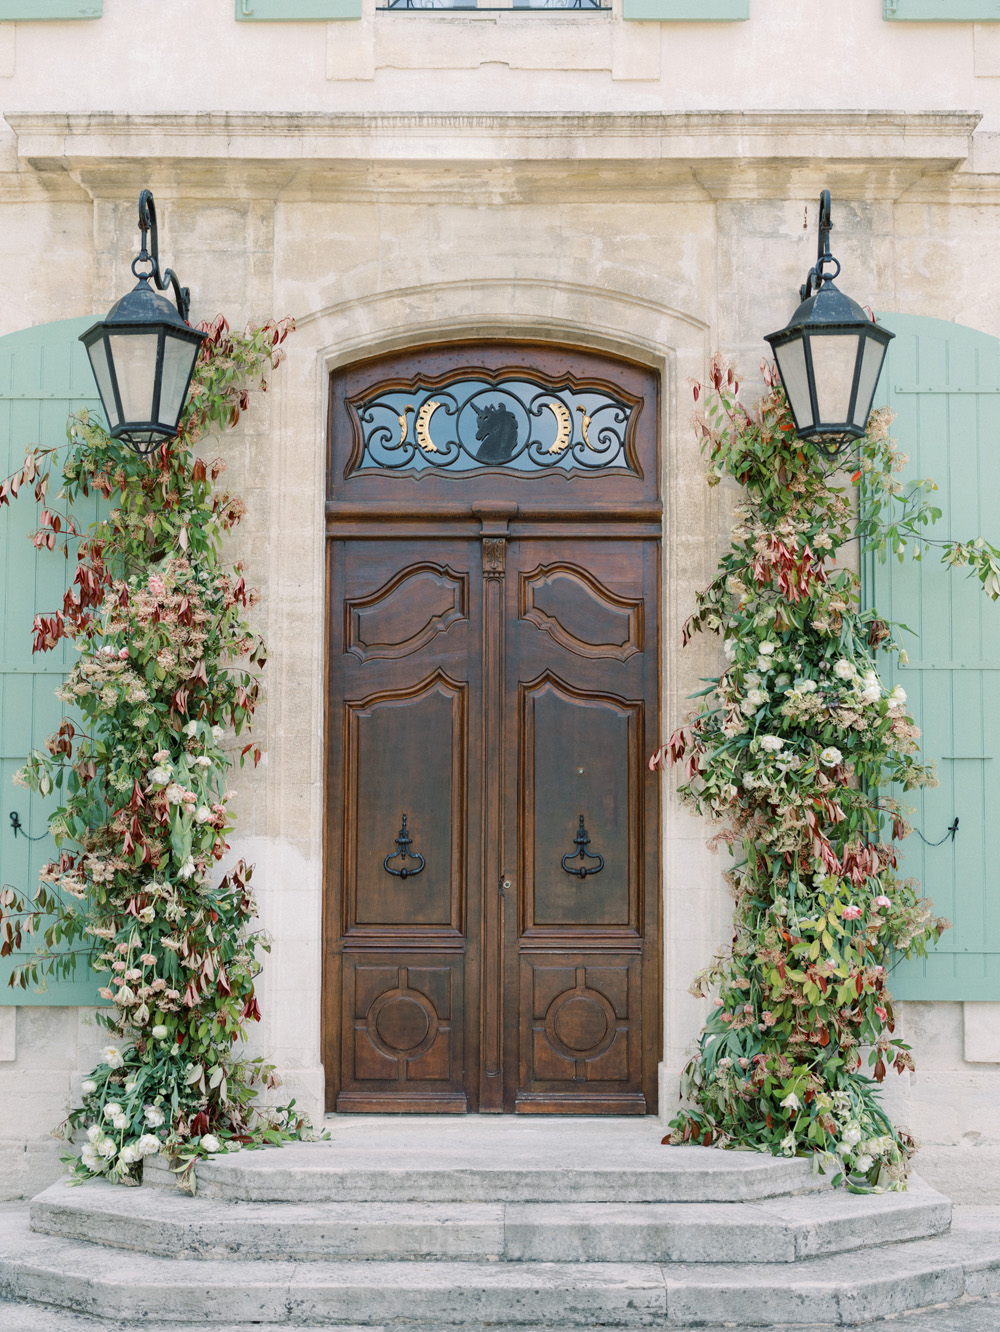 Floral arrangement on wedding doors